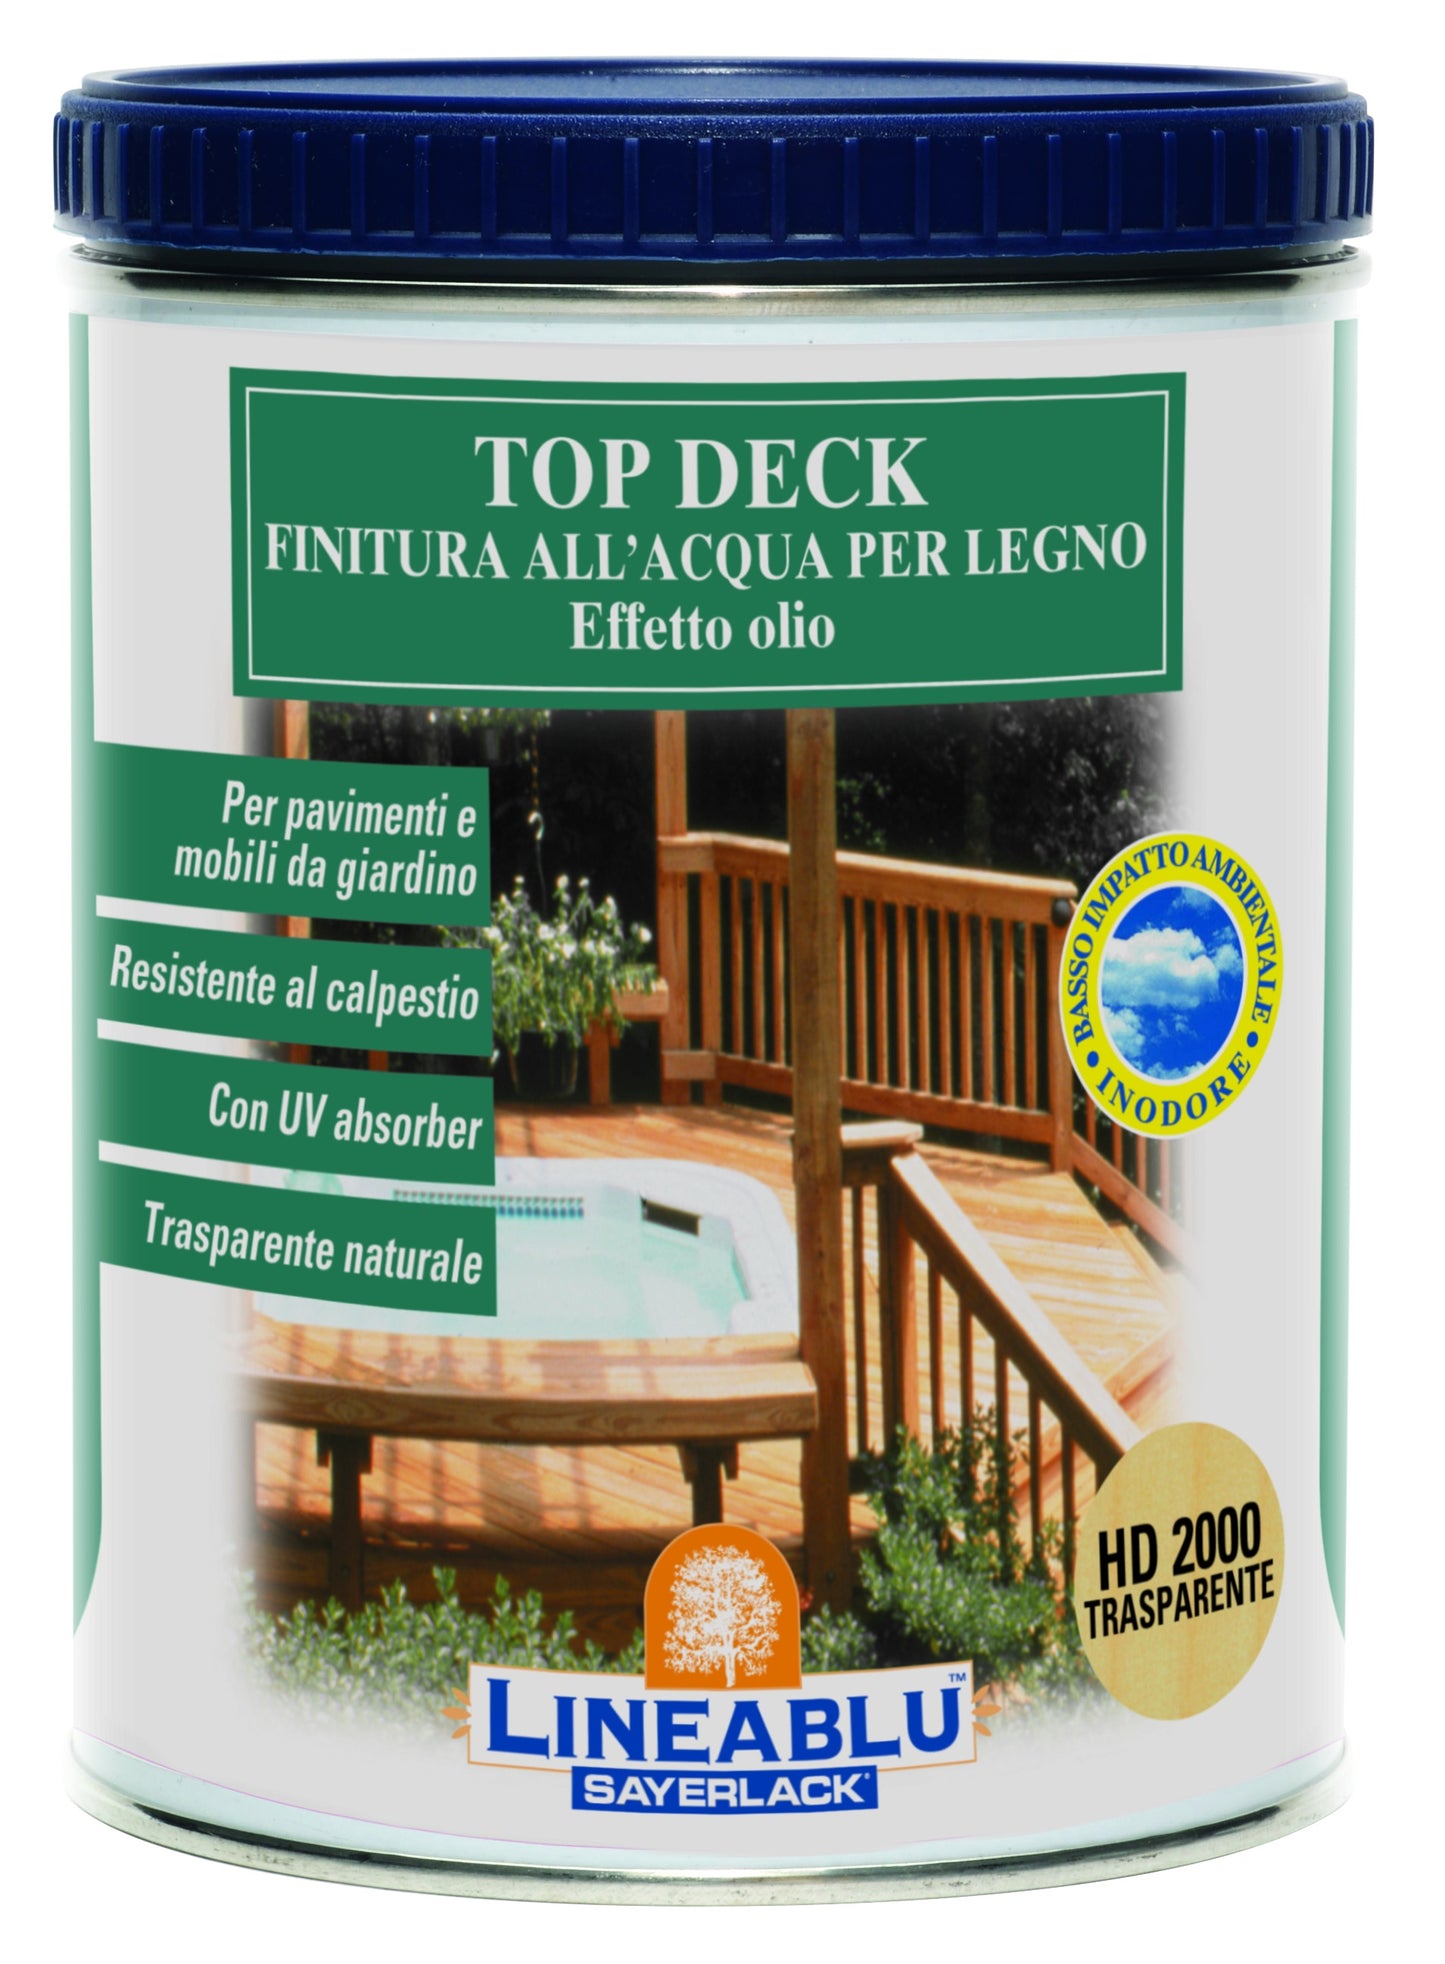 Top deck finitura all’acqua per legno effetto olio Trasparente  -Sayerlack Linea Blu